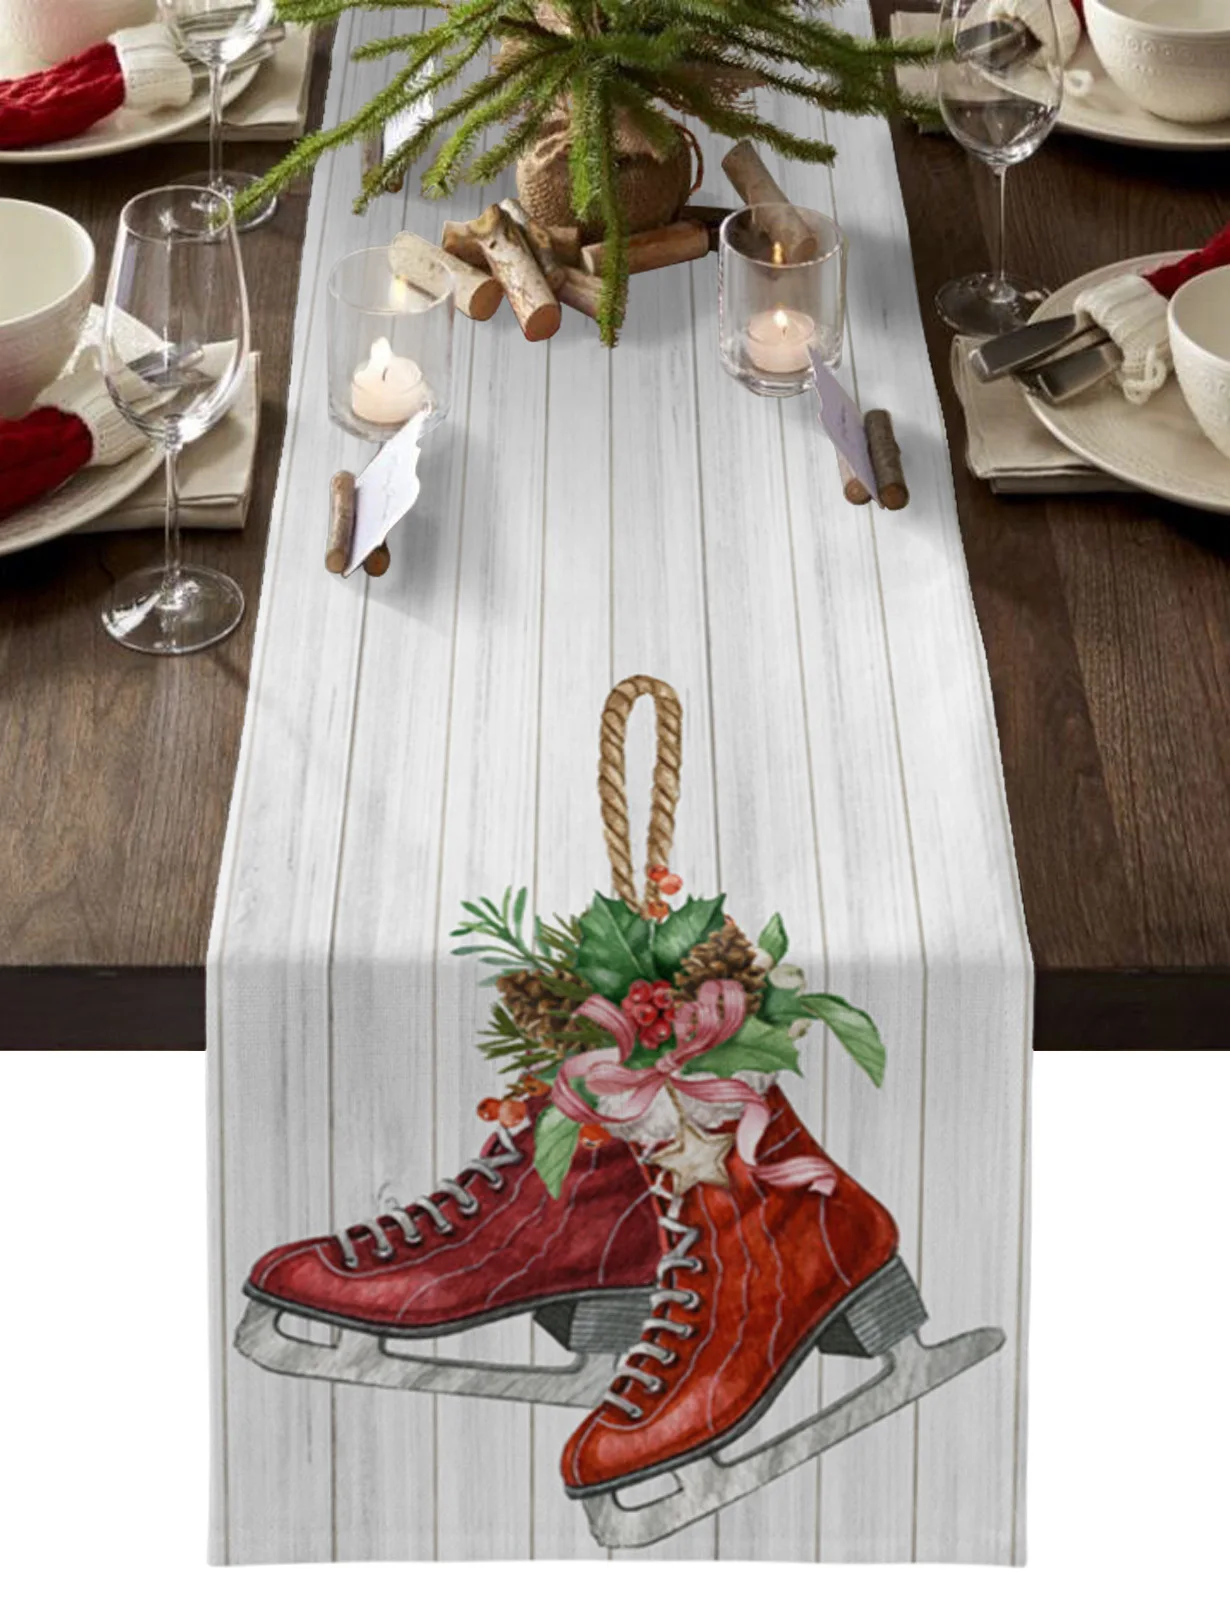 

Christmas Pine Needles Skates Wood Grain Table Runner Cotton Linen Wedding Decor Table Runner Christmas Table Decor Tablecloth